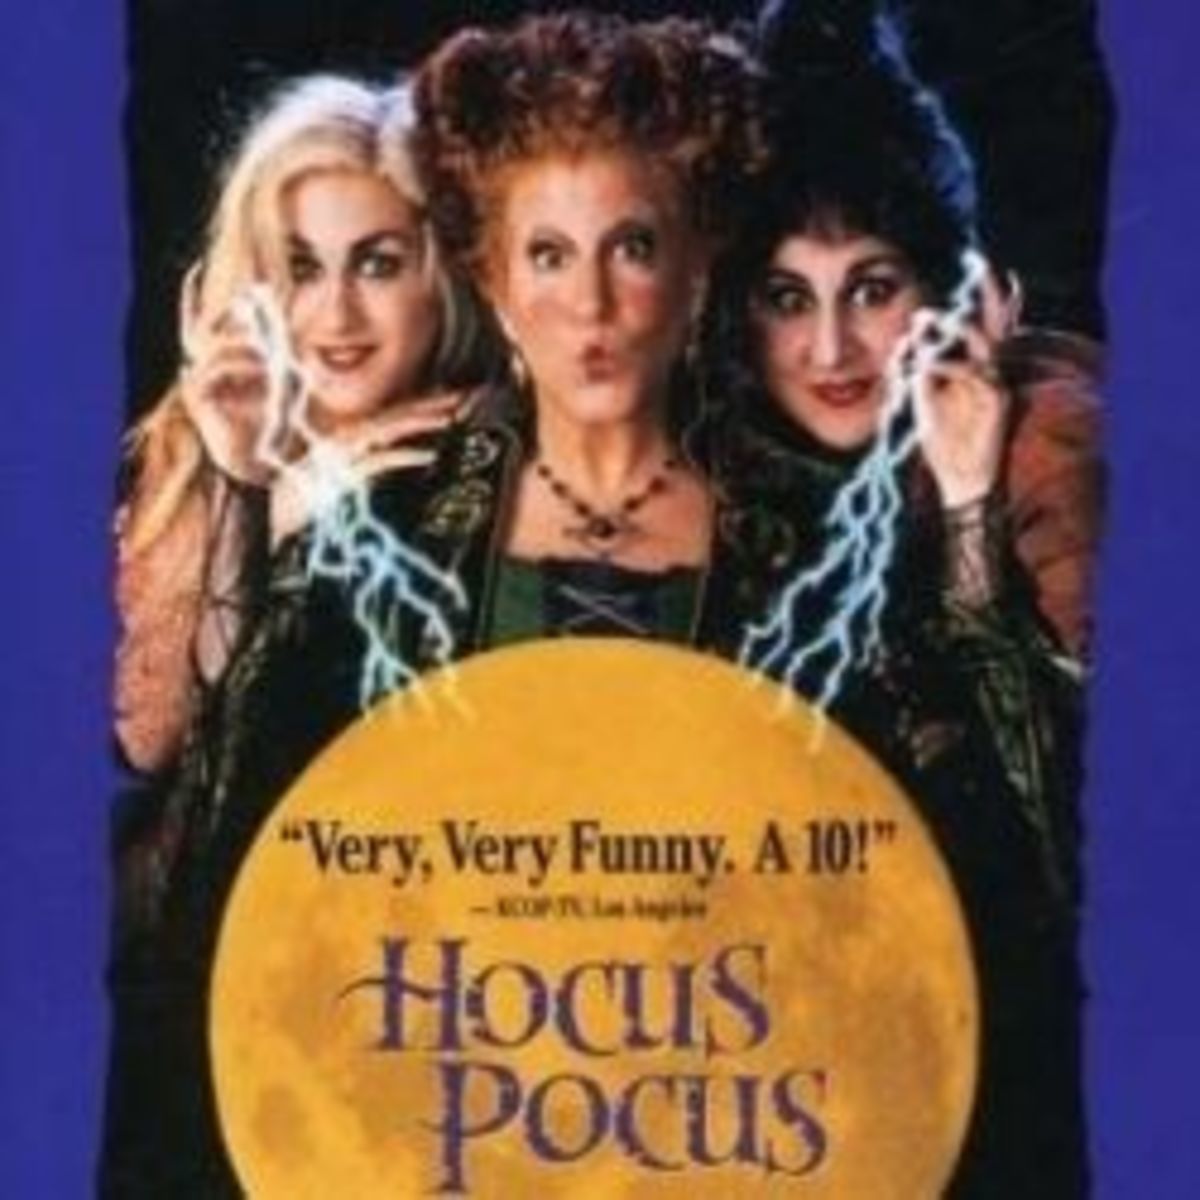 Hocus Pocus Movie Costumes For Halloween Fun